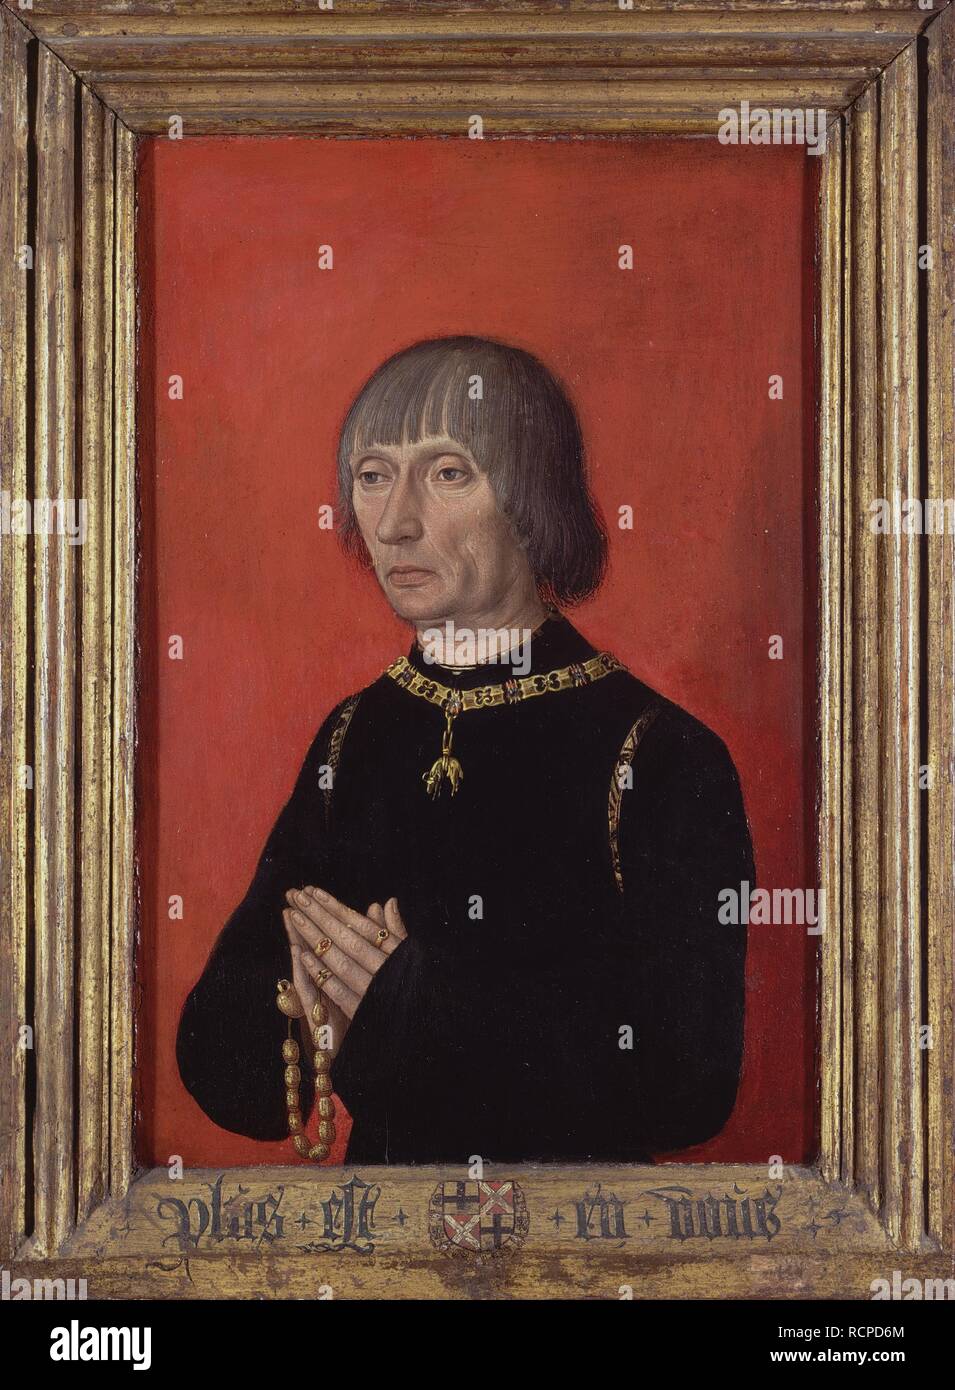 Retrato de Louis de Gruuthuse. Museo: Groeningemuseum de Brujas. Autor: Maestro de los retratos de los príncipes. Foto de stock